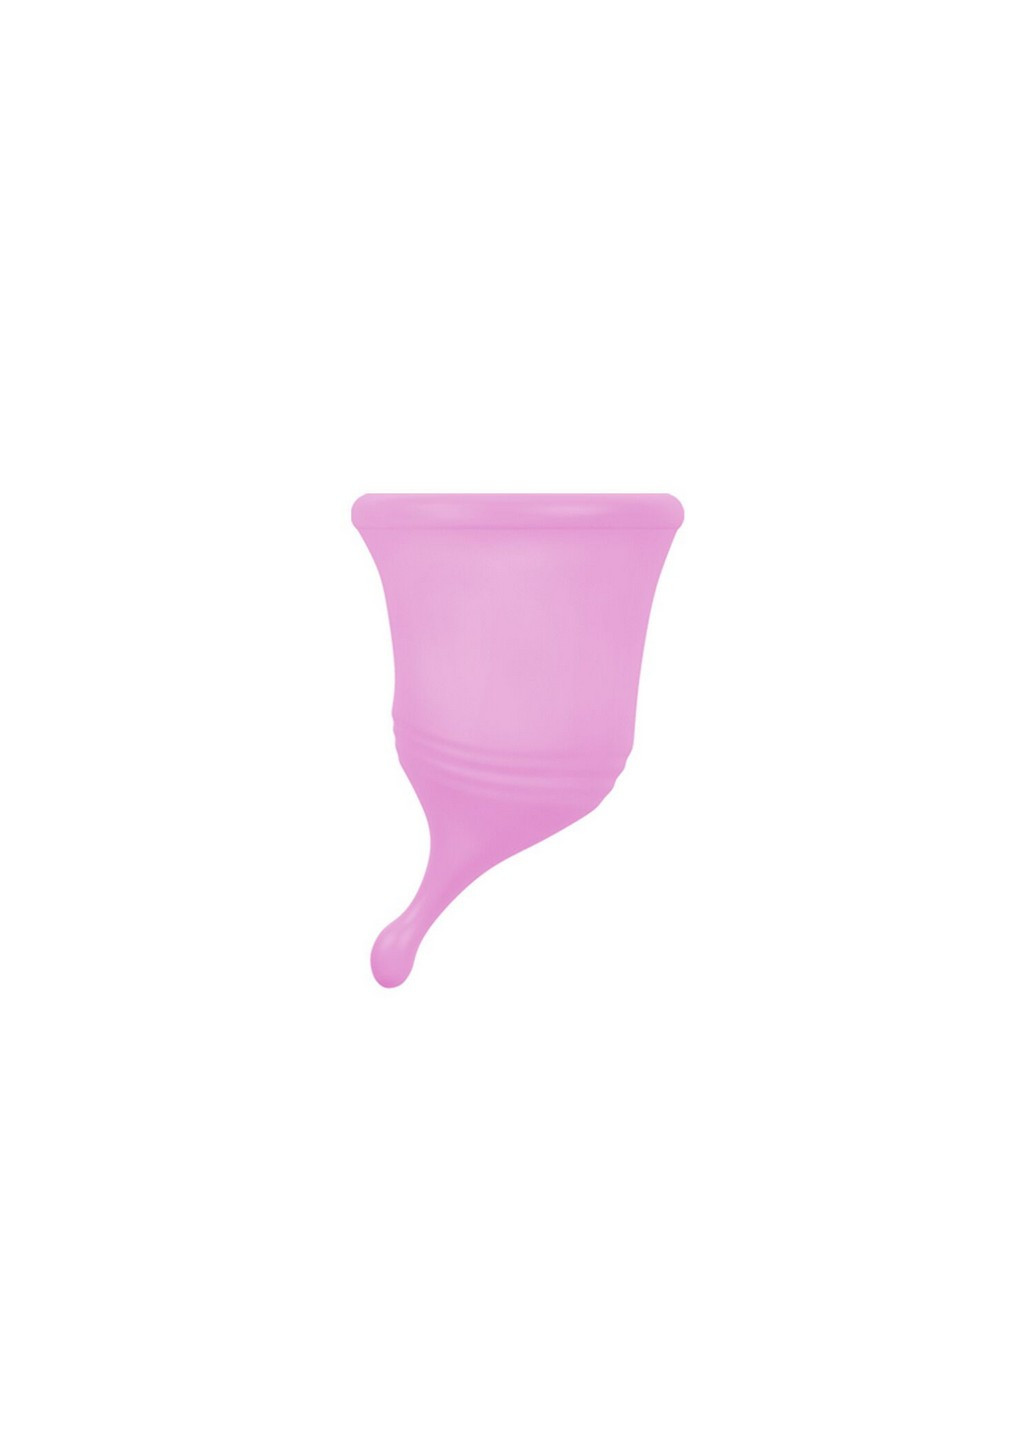 Менструальная чаша Eve Cup New размер Femintimate (258353360)